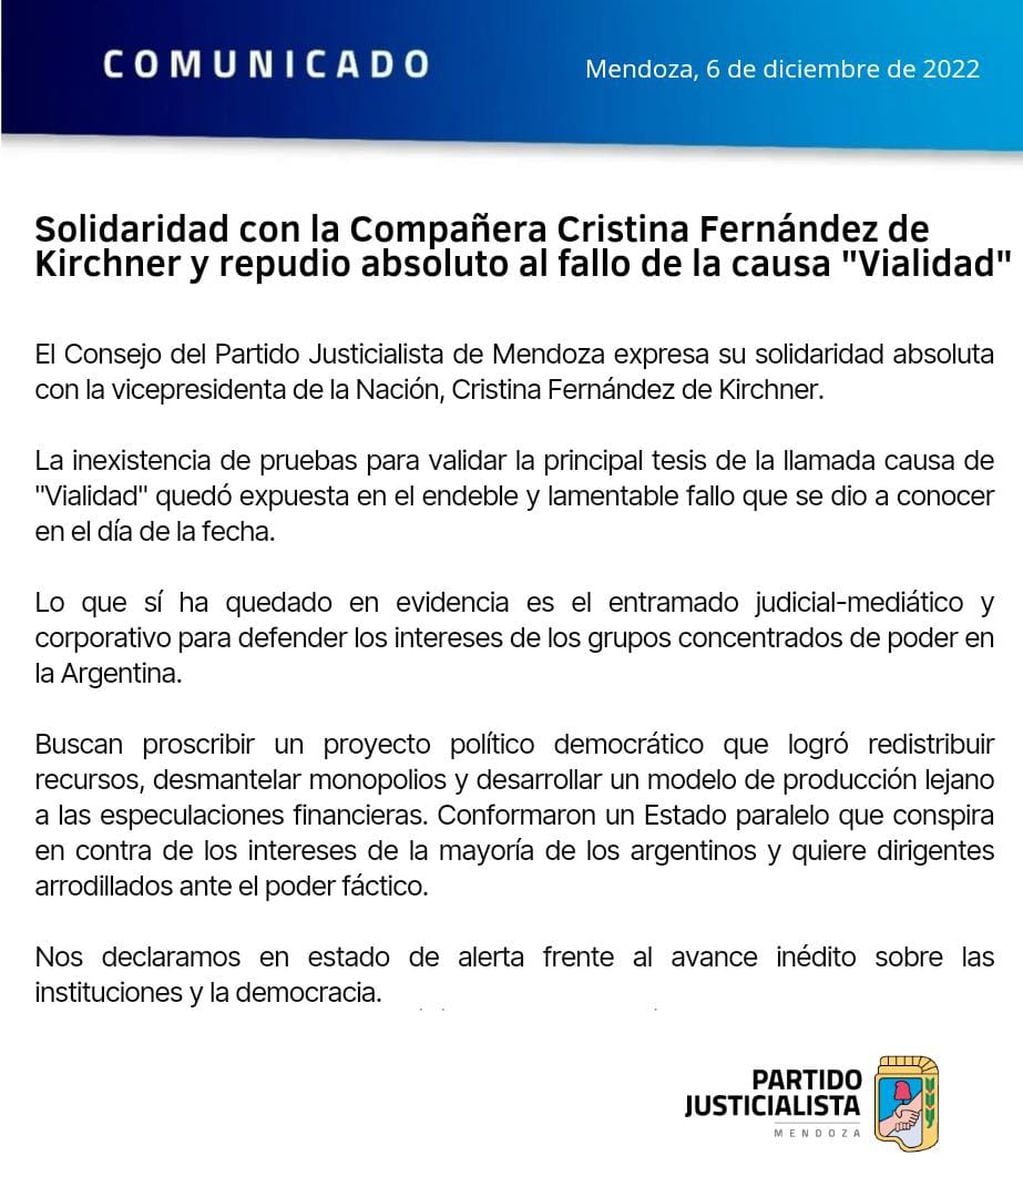 El comunicado del Partido Justicialista repudiando la condena a Cristina Fernández.